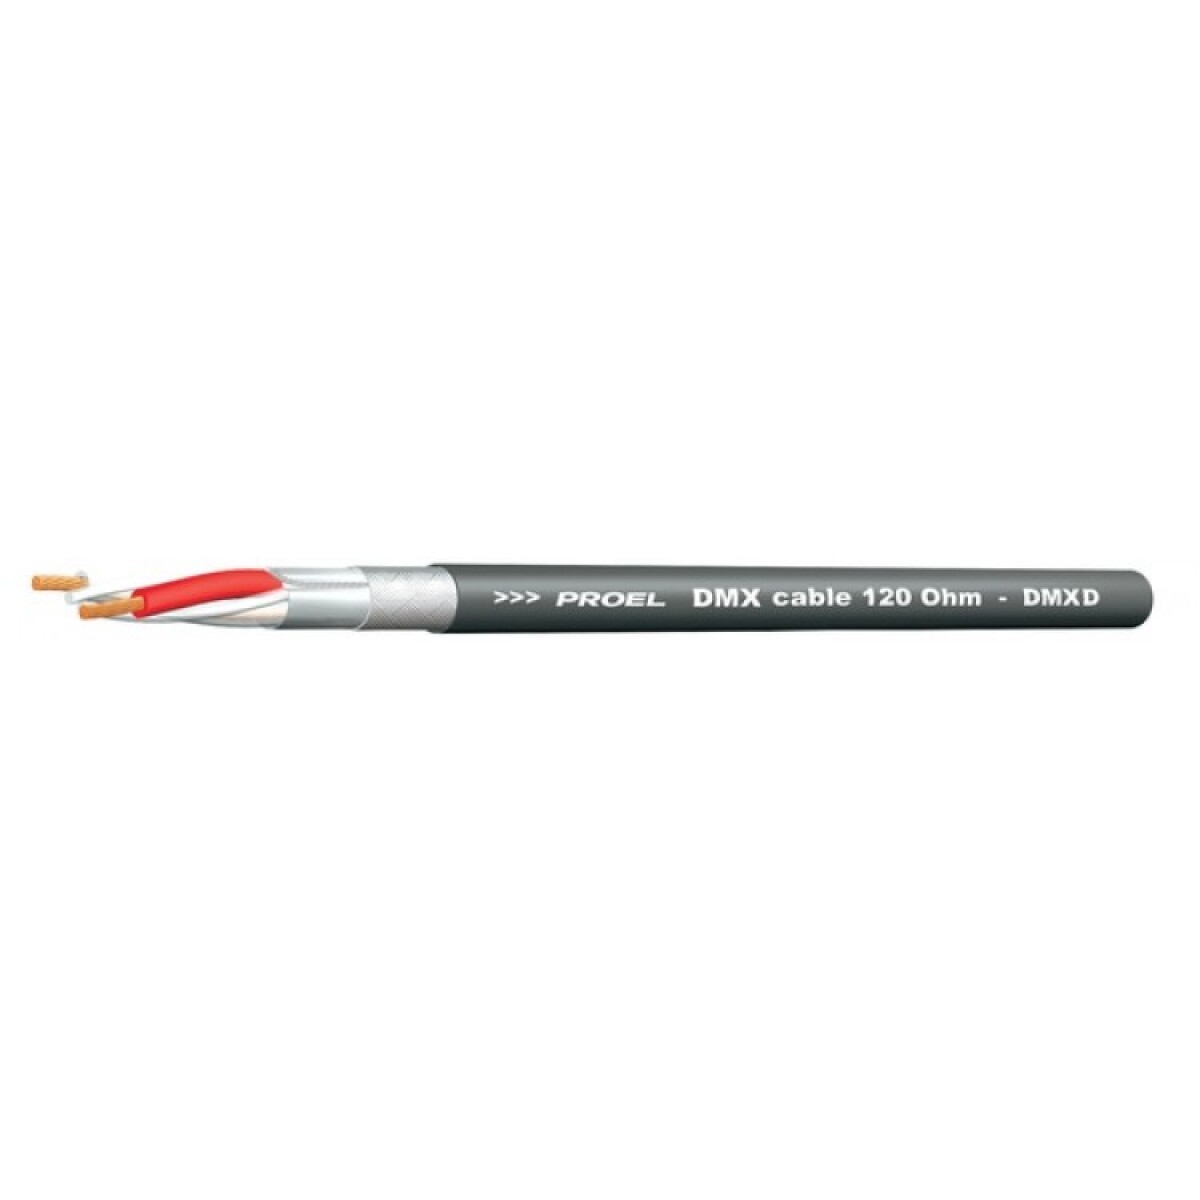 Cable Proel Dmx Luces Dmxd 24awg-0.22mm Blk 